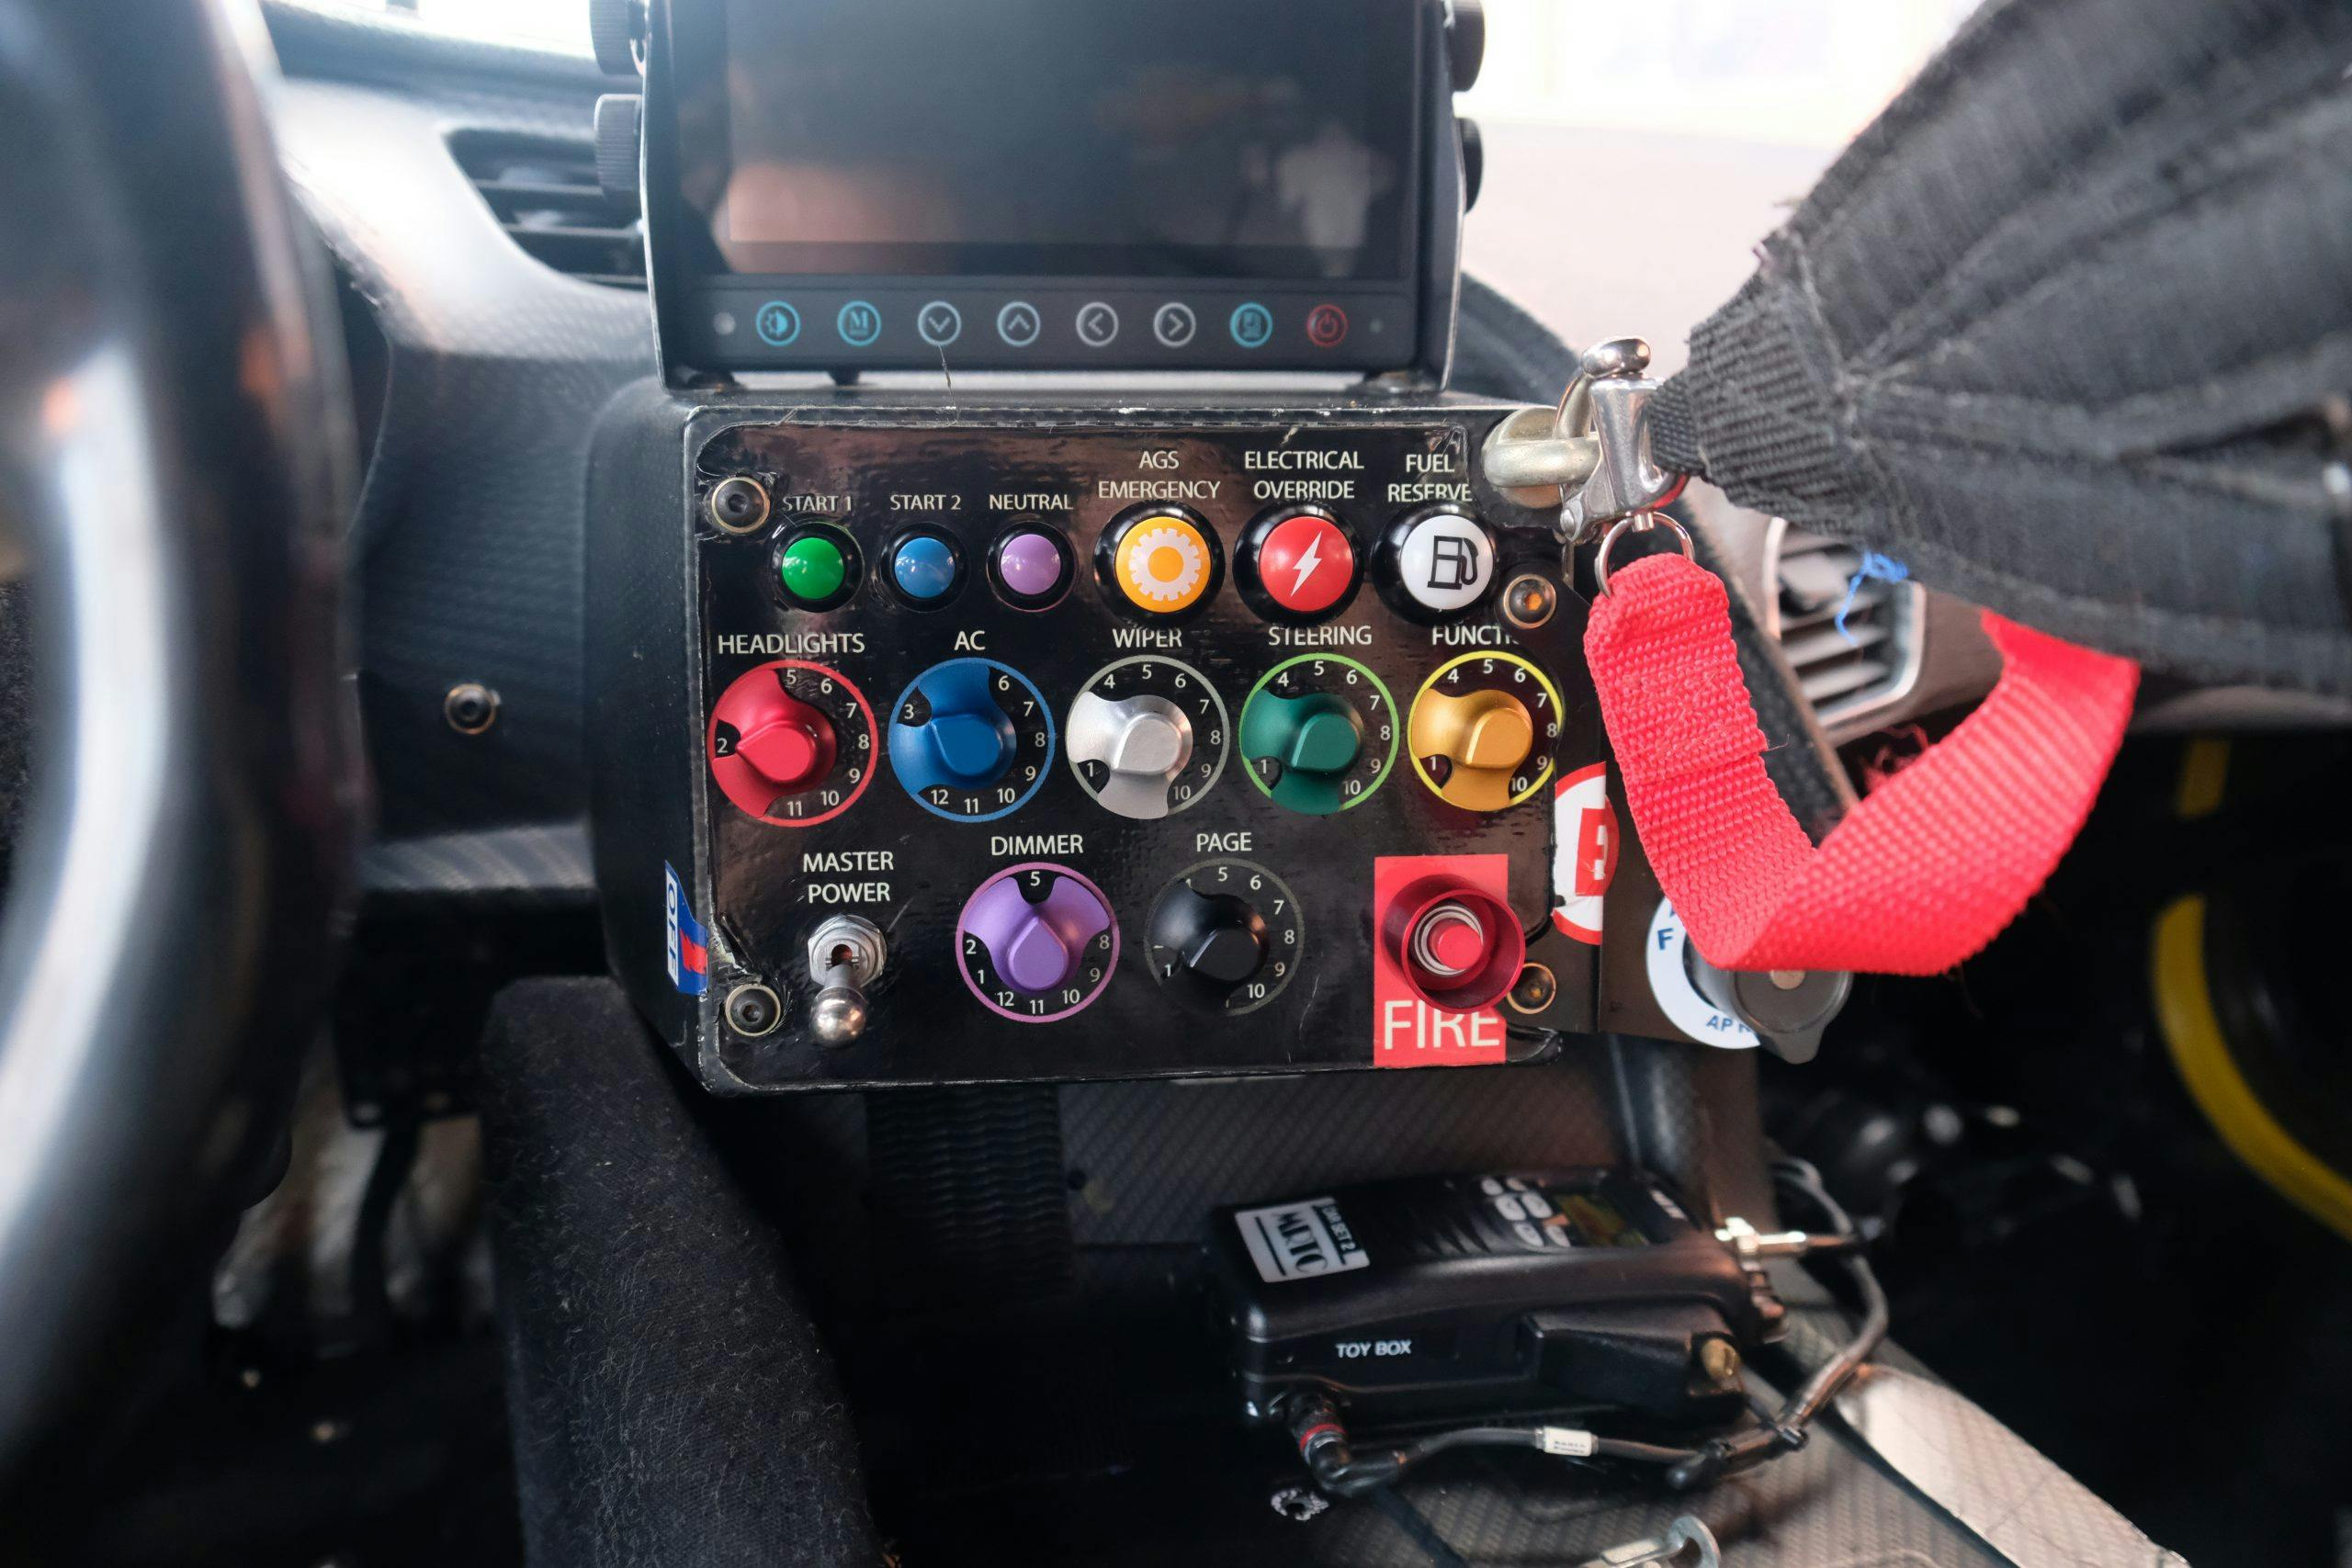 2015 corvette c7.r control panel